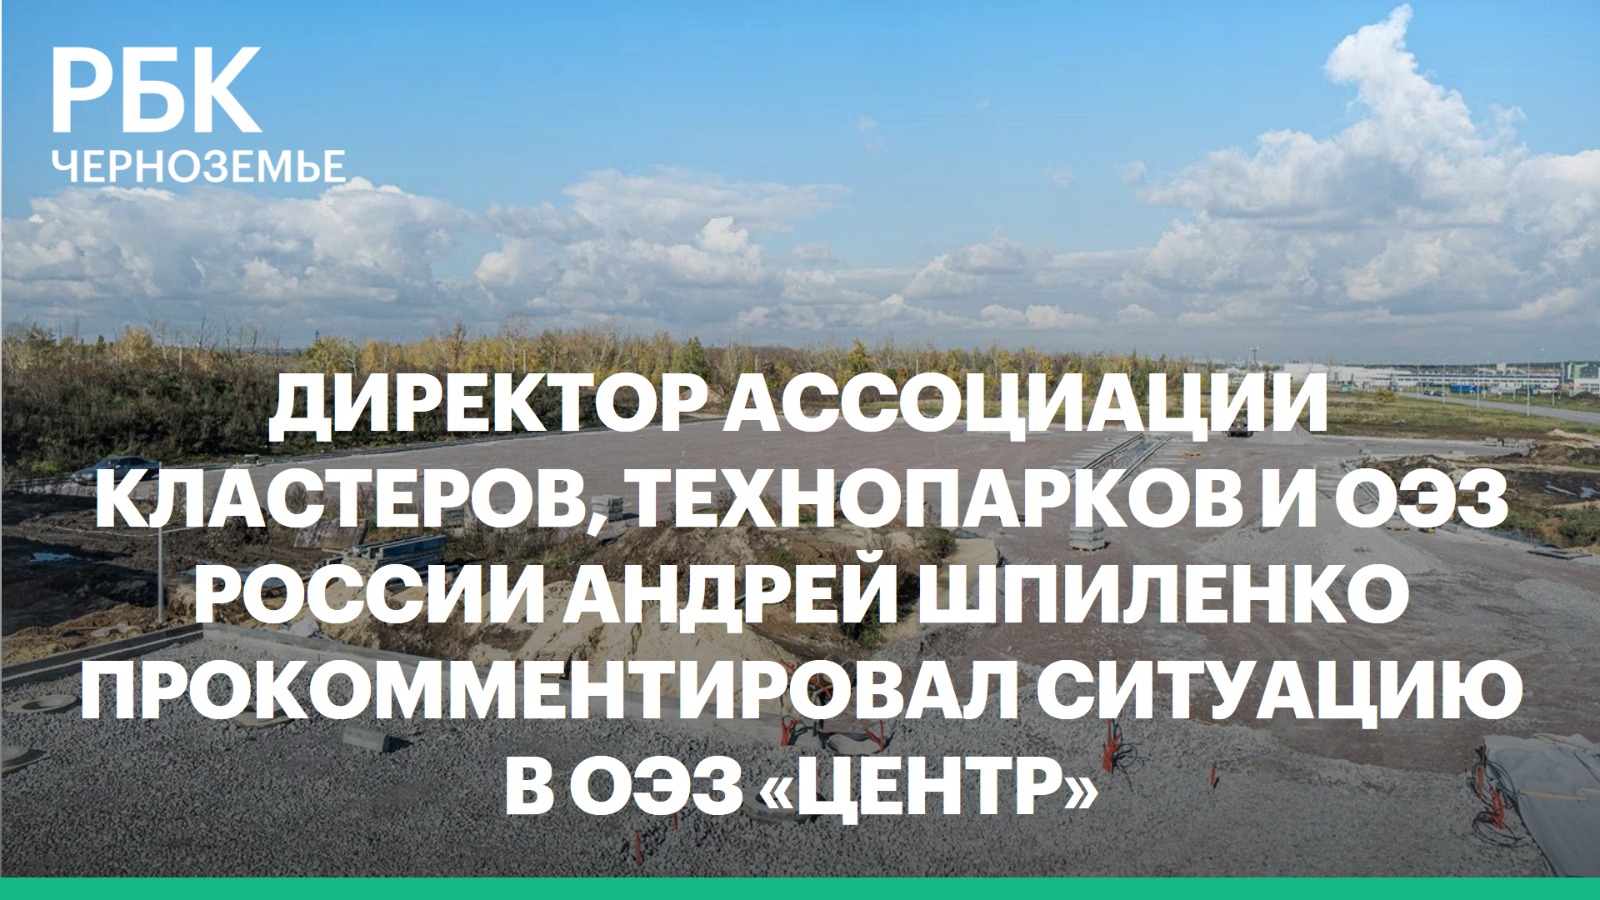 Андрей Шпиленко: «Не готов согласиться, что ОЭЗ «Центр» отстает от графика»